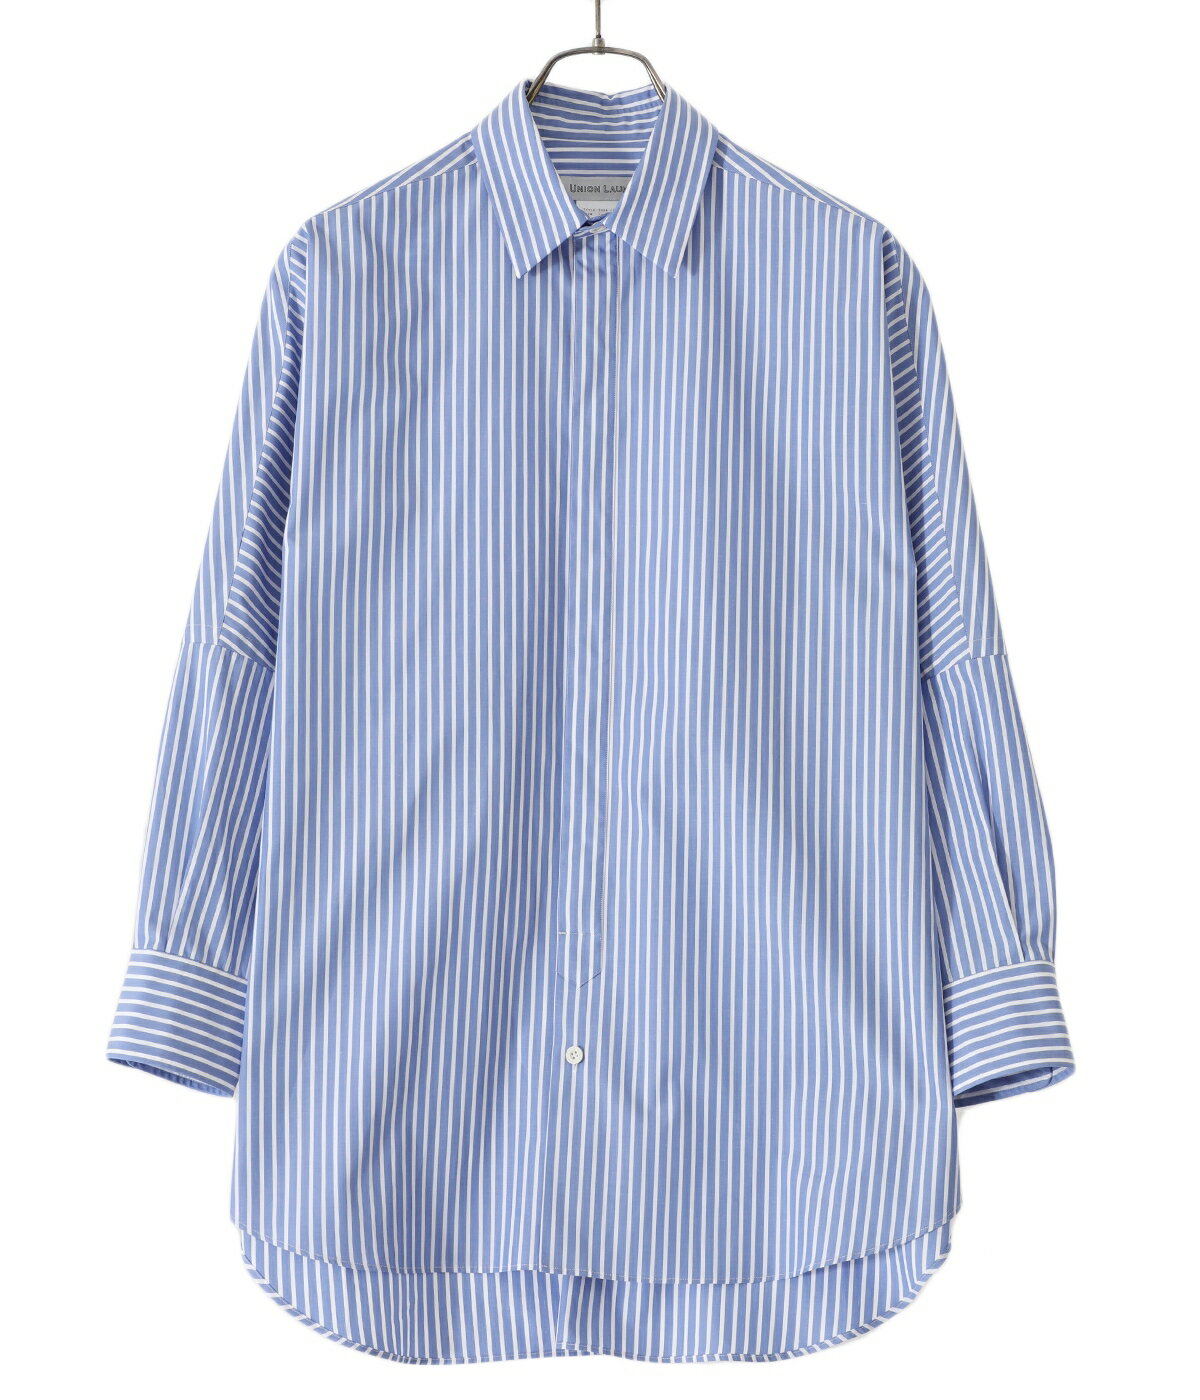 【送料無料】UNION LAUNCH / ユニオンランチ : 【レディース】Regular collar dolman shirt : レギュラーカラー ドルマン シャツ ブルー ストライプ : 3710700382【DEA】